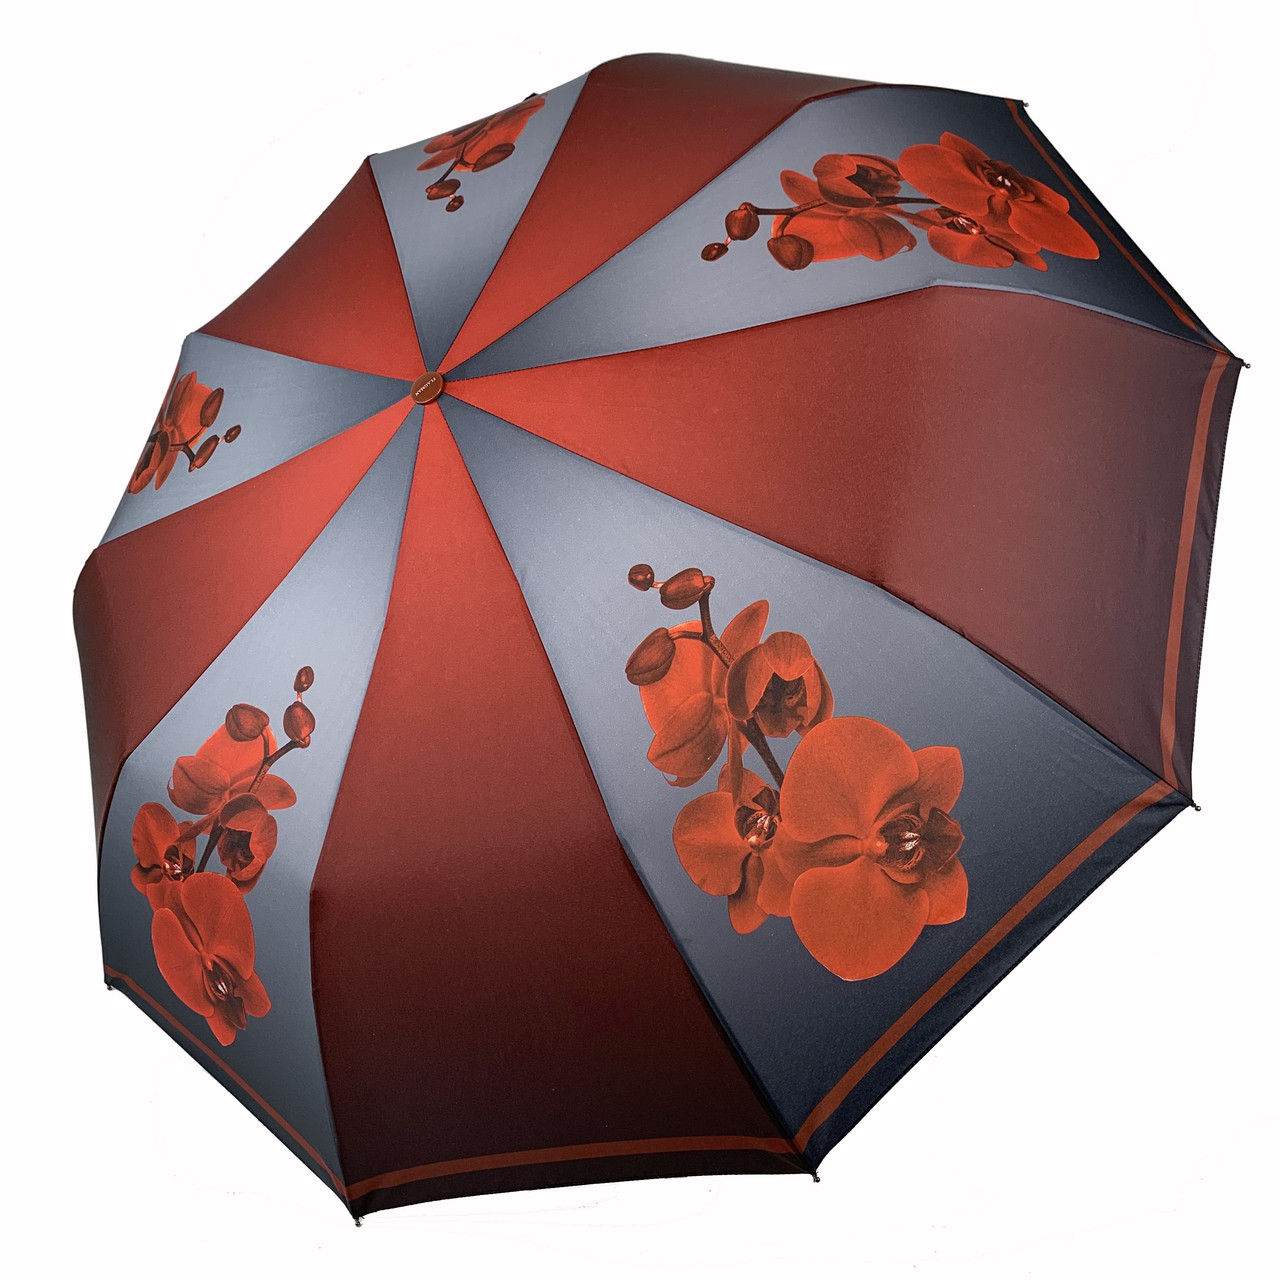 Жіноча складна автоматична парасоля з принтом орхідей від TheBest-Flagman, бордова, 0510-1